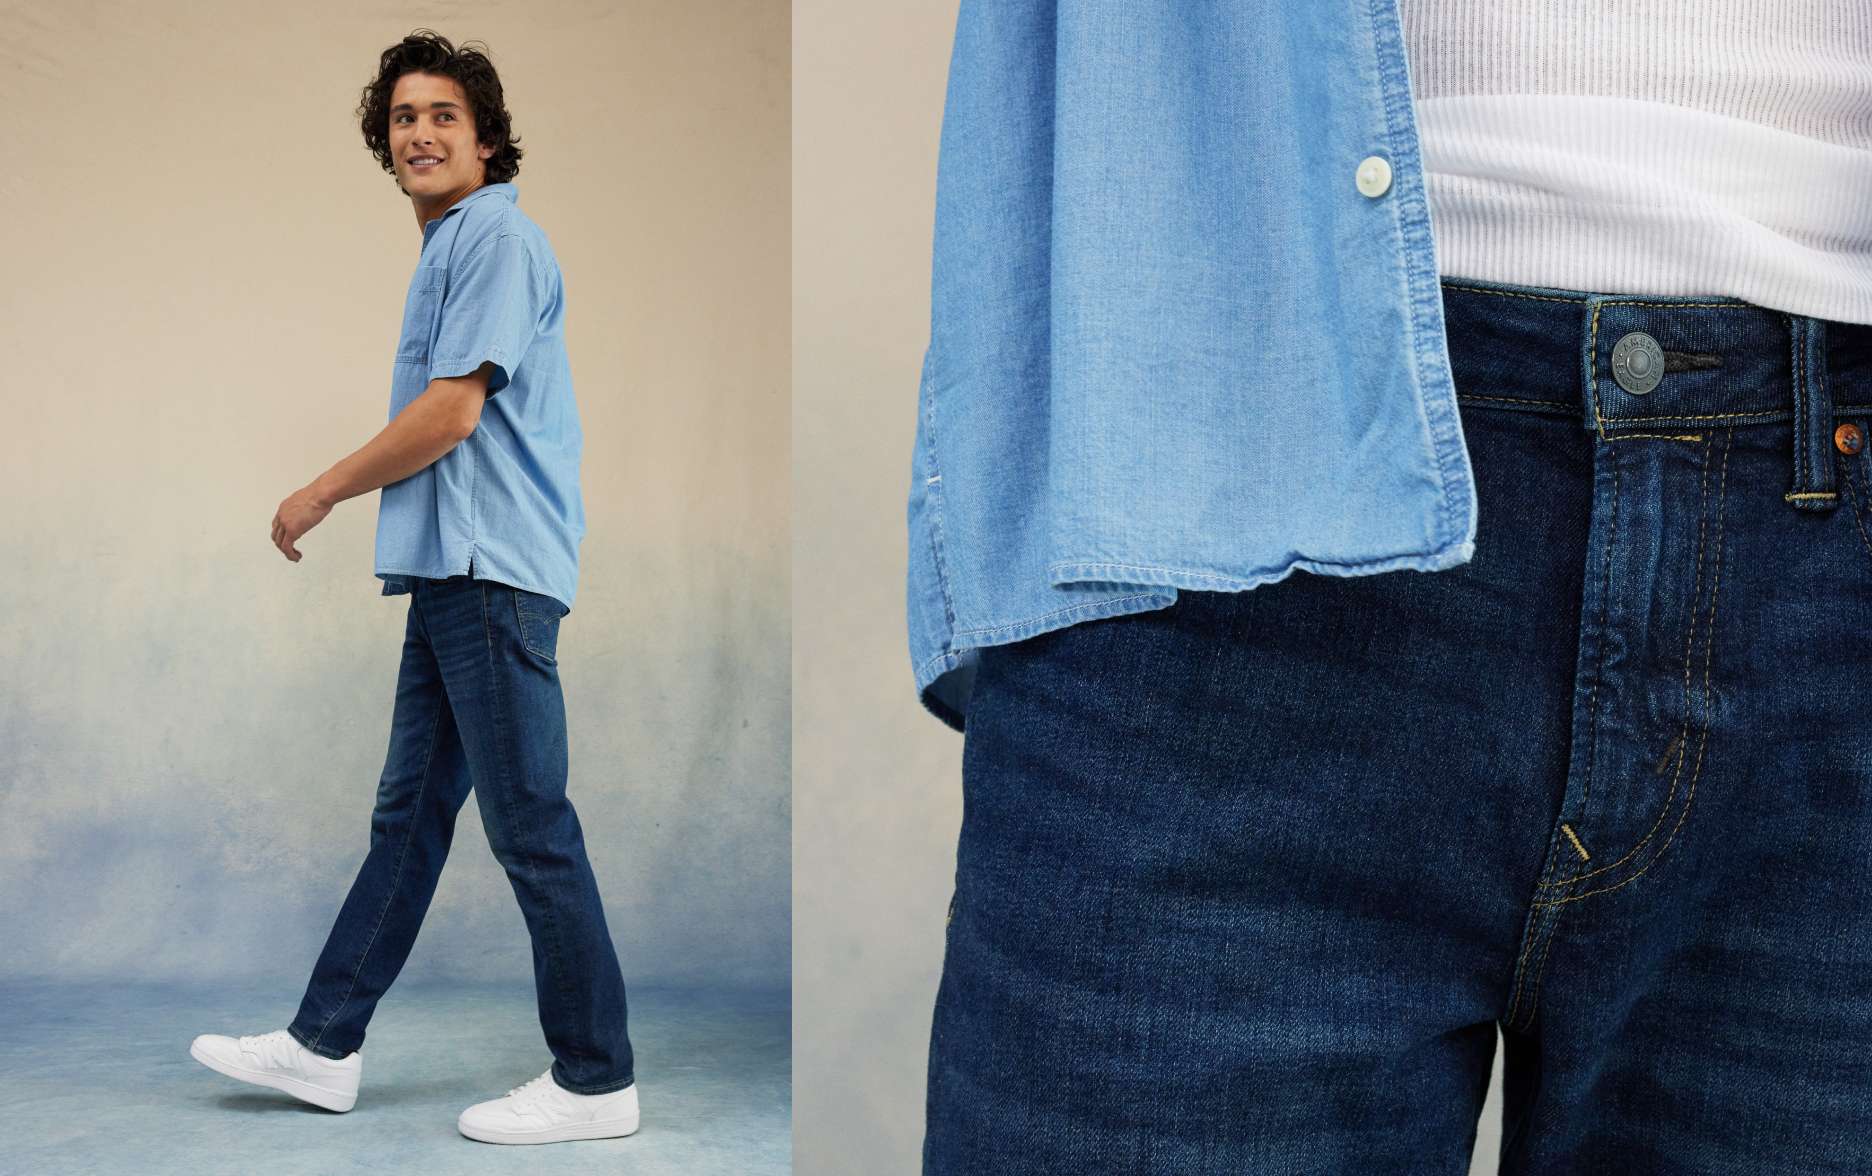 Liam mesure 6 pi et porte le jean étroit droit de taille 30 x 32.